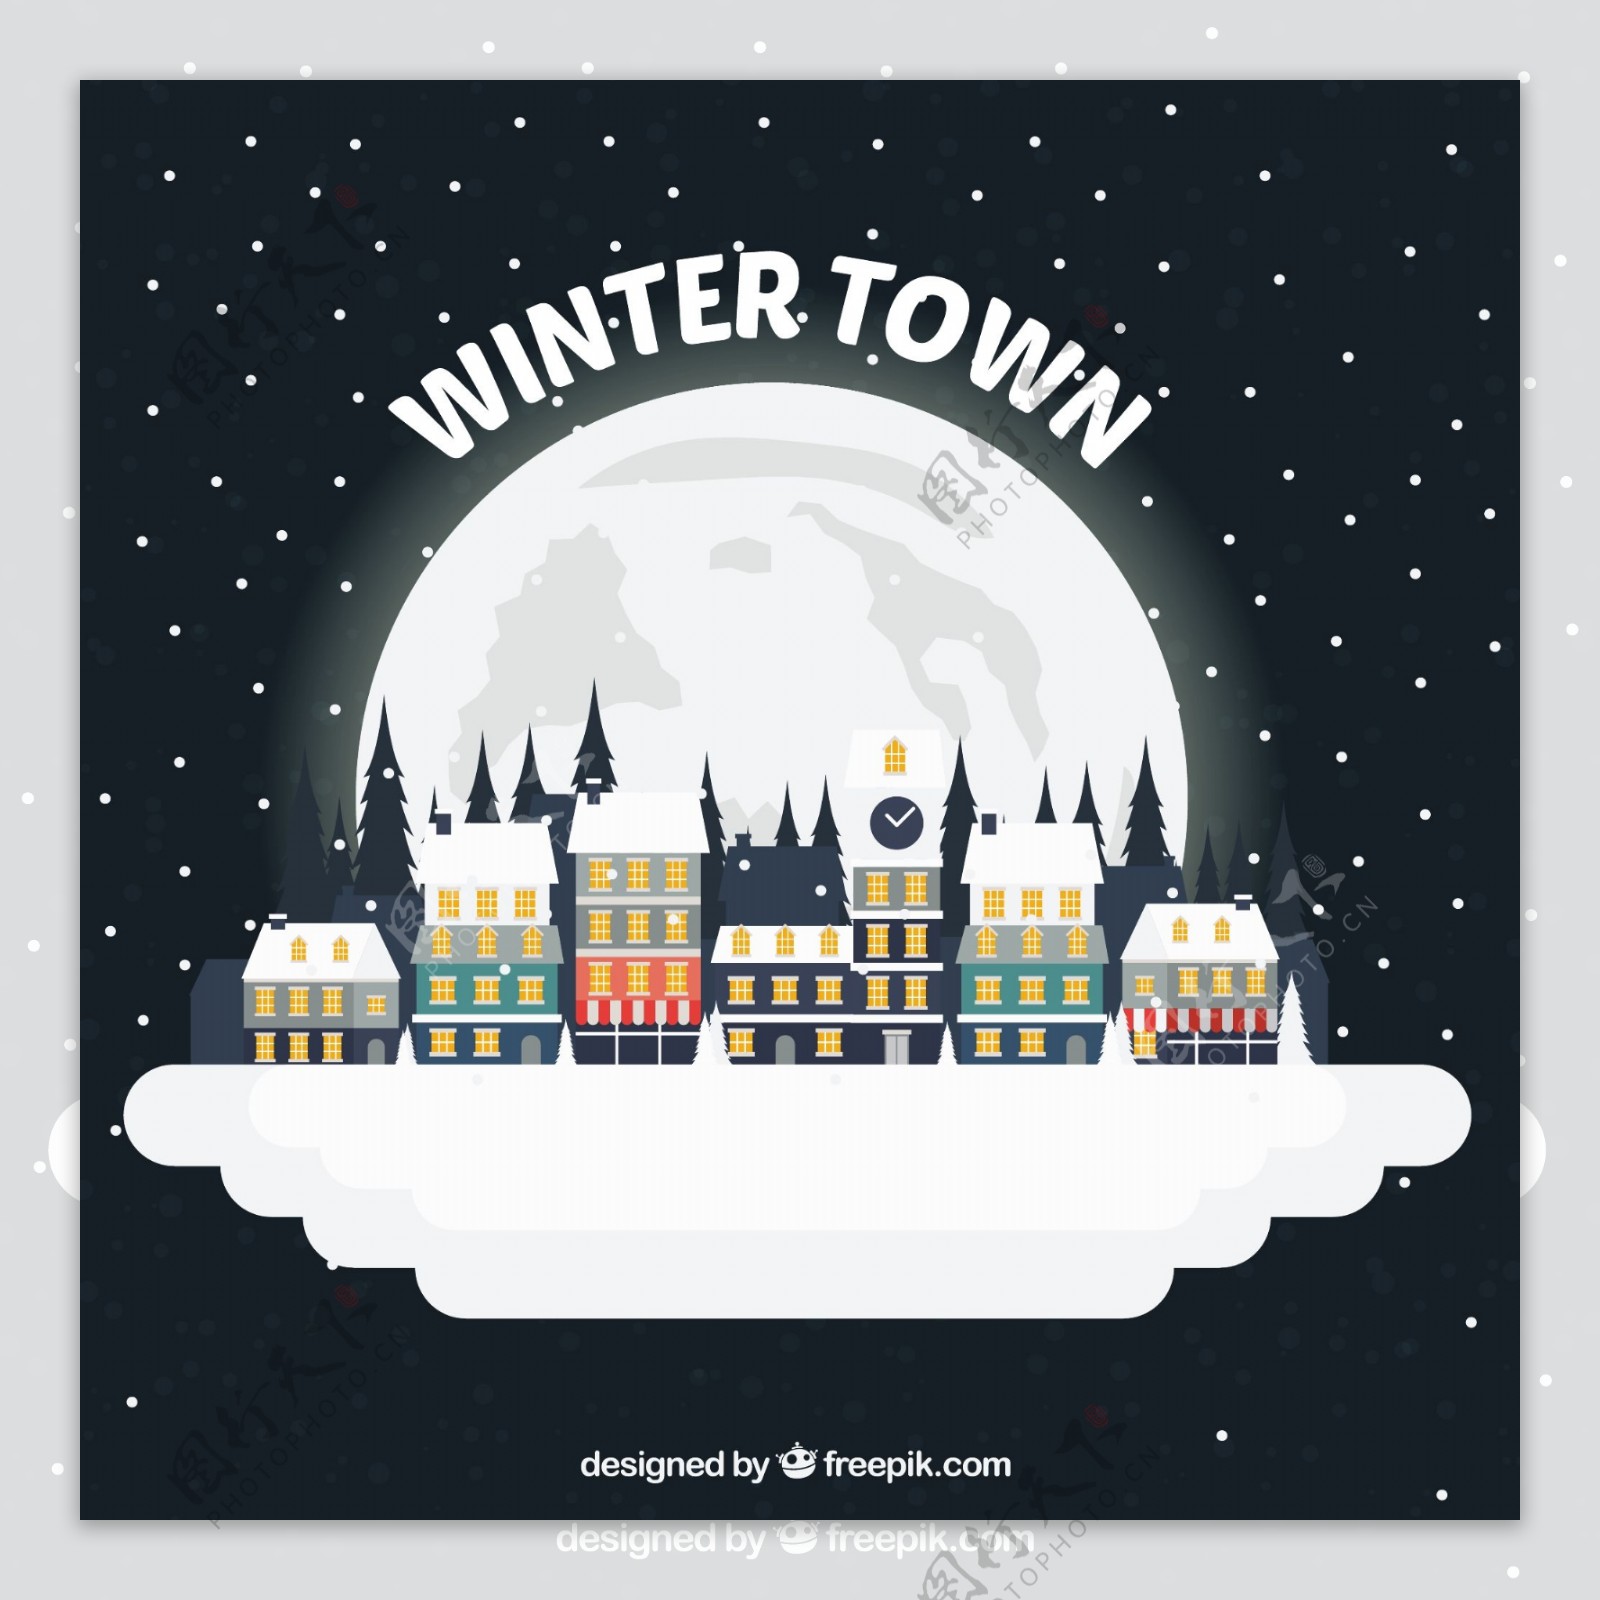 下雪的小镇的插图